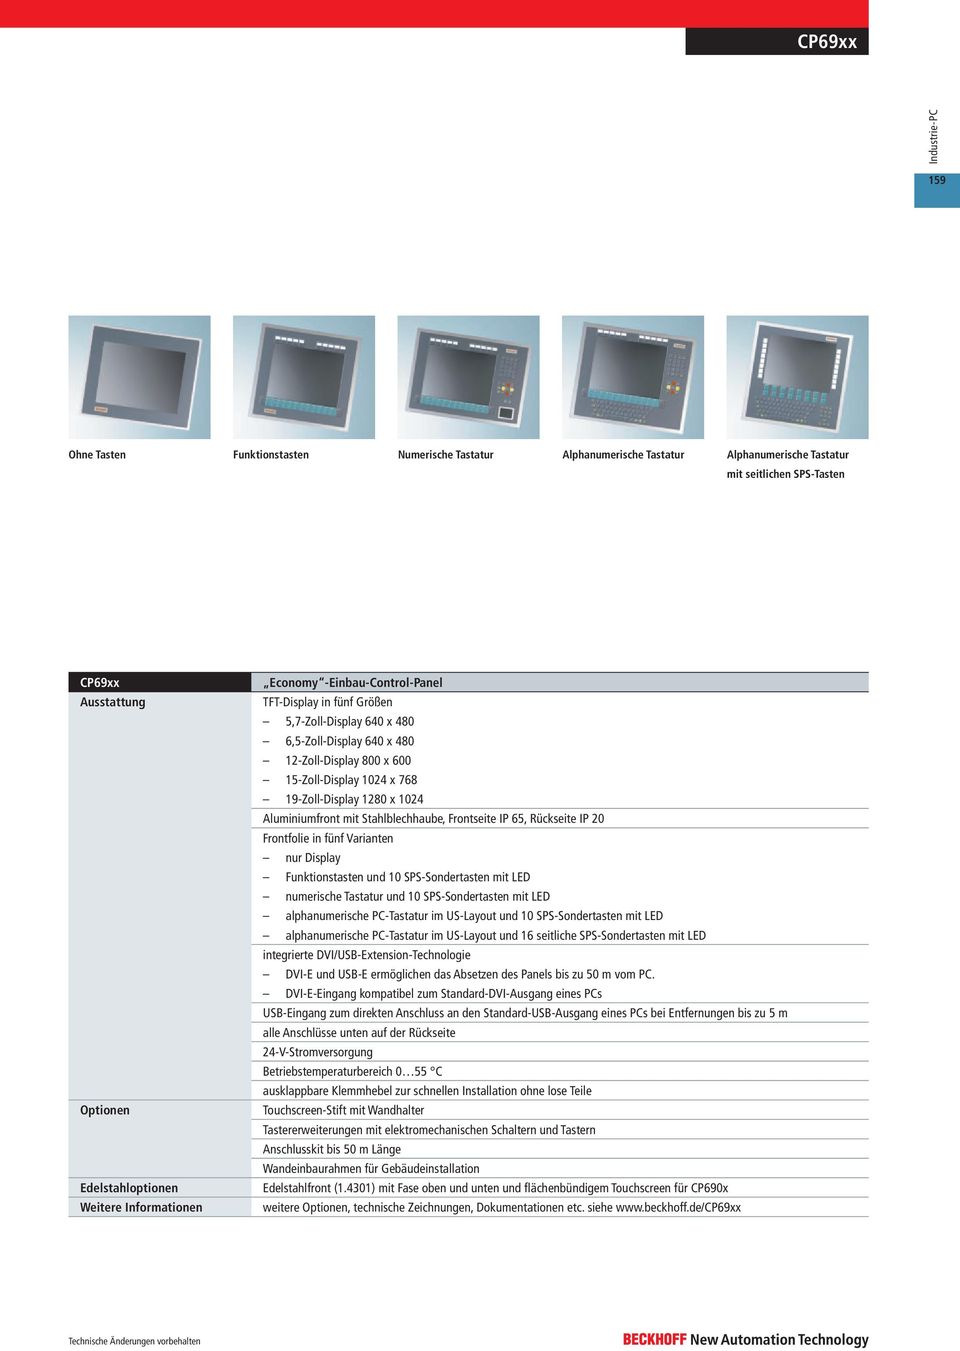 65, Rückseite IP 20 Frontfolie in fünf Varianten nur Display Funktionstasten und 10 SPS-Sondertasten mit LED numerische Tastatur und 10 SPS-Sondertasten mit LED alphanumerische PC-Tastatur im